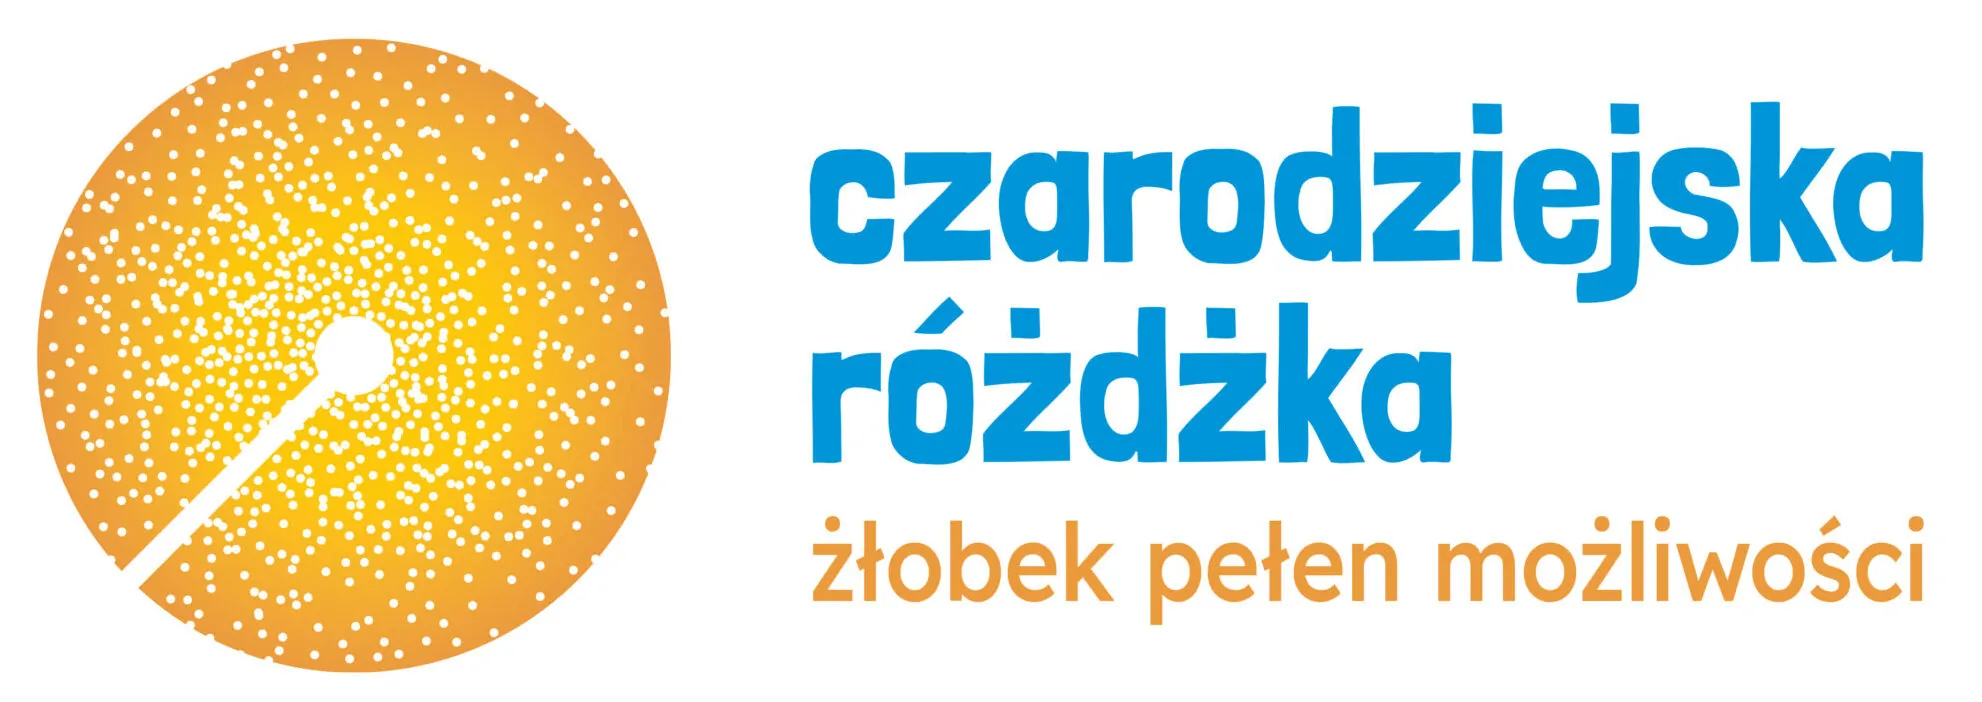 Prywatny żłobek w Szczecinie z kompleksowym programem warsztatów dla dzieci – Czarodziejska różdżka